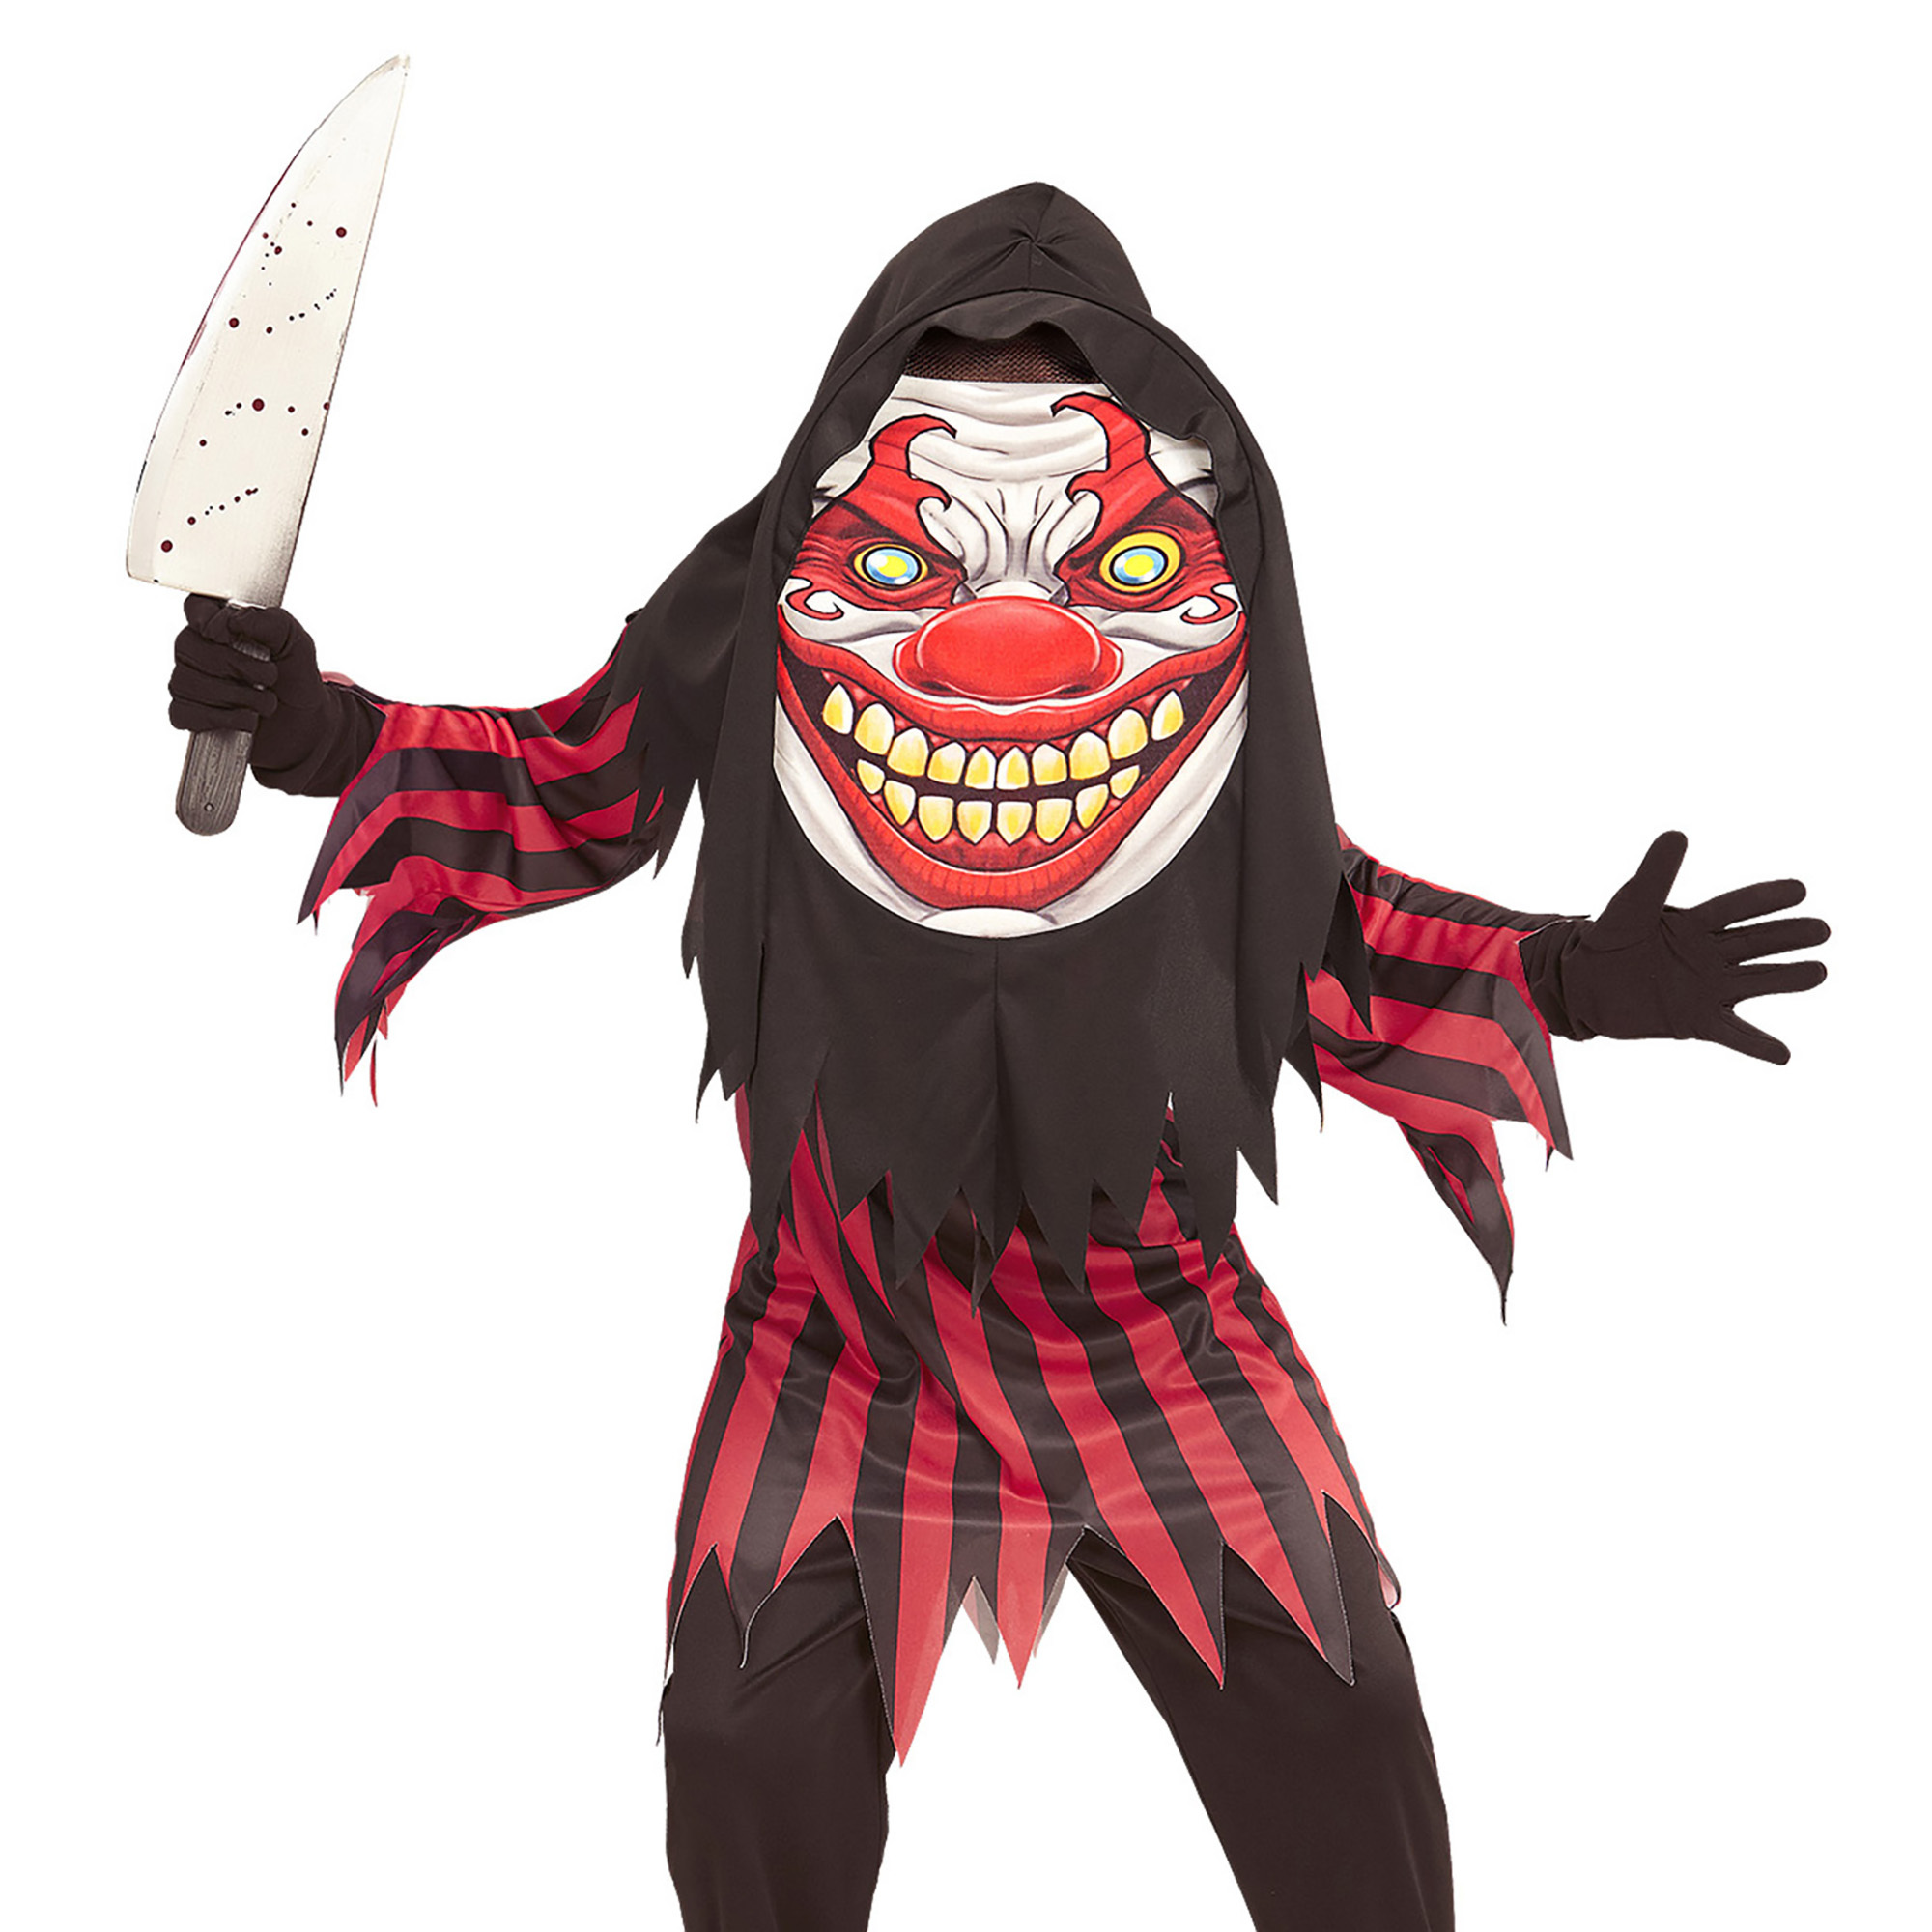 Grappig horror clown kostuum met groot masker kostuum kids